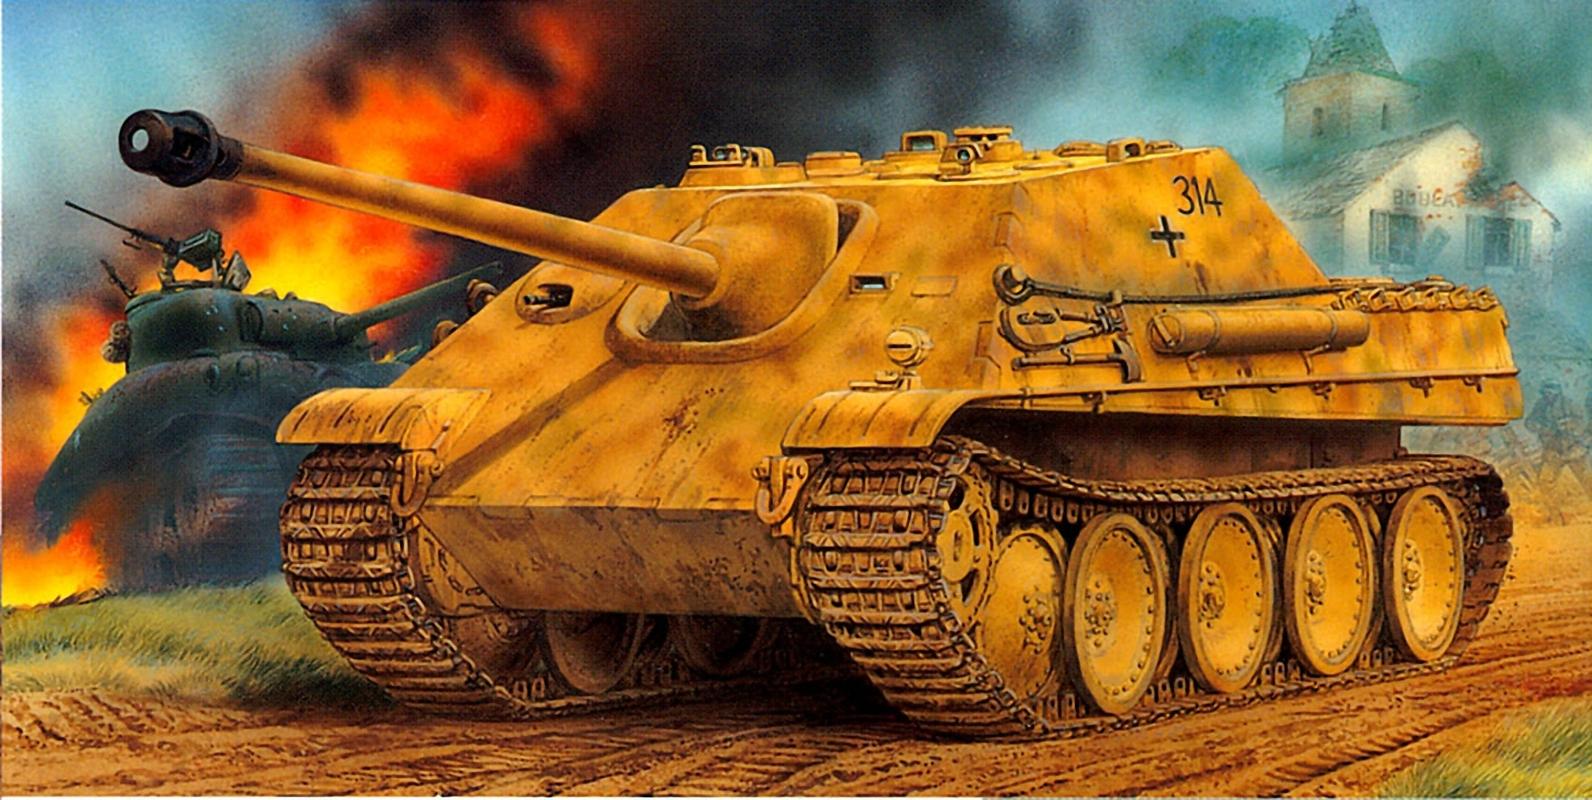 Сборная модель 6458 Dragon Немецкое самоходное орудие Sd.Kfz173 Jagdpanther Ausf.GI (ранняя модификация)